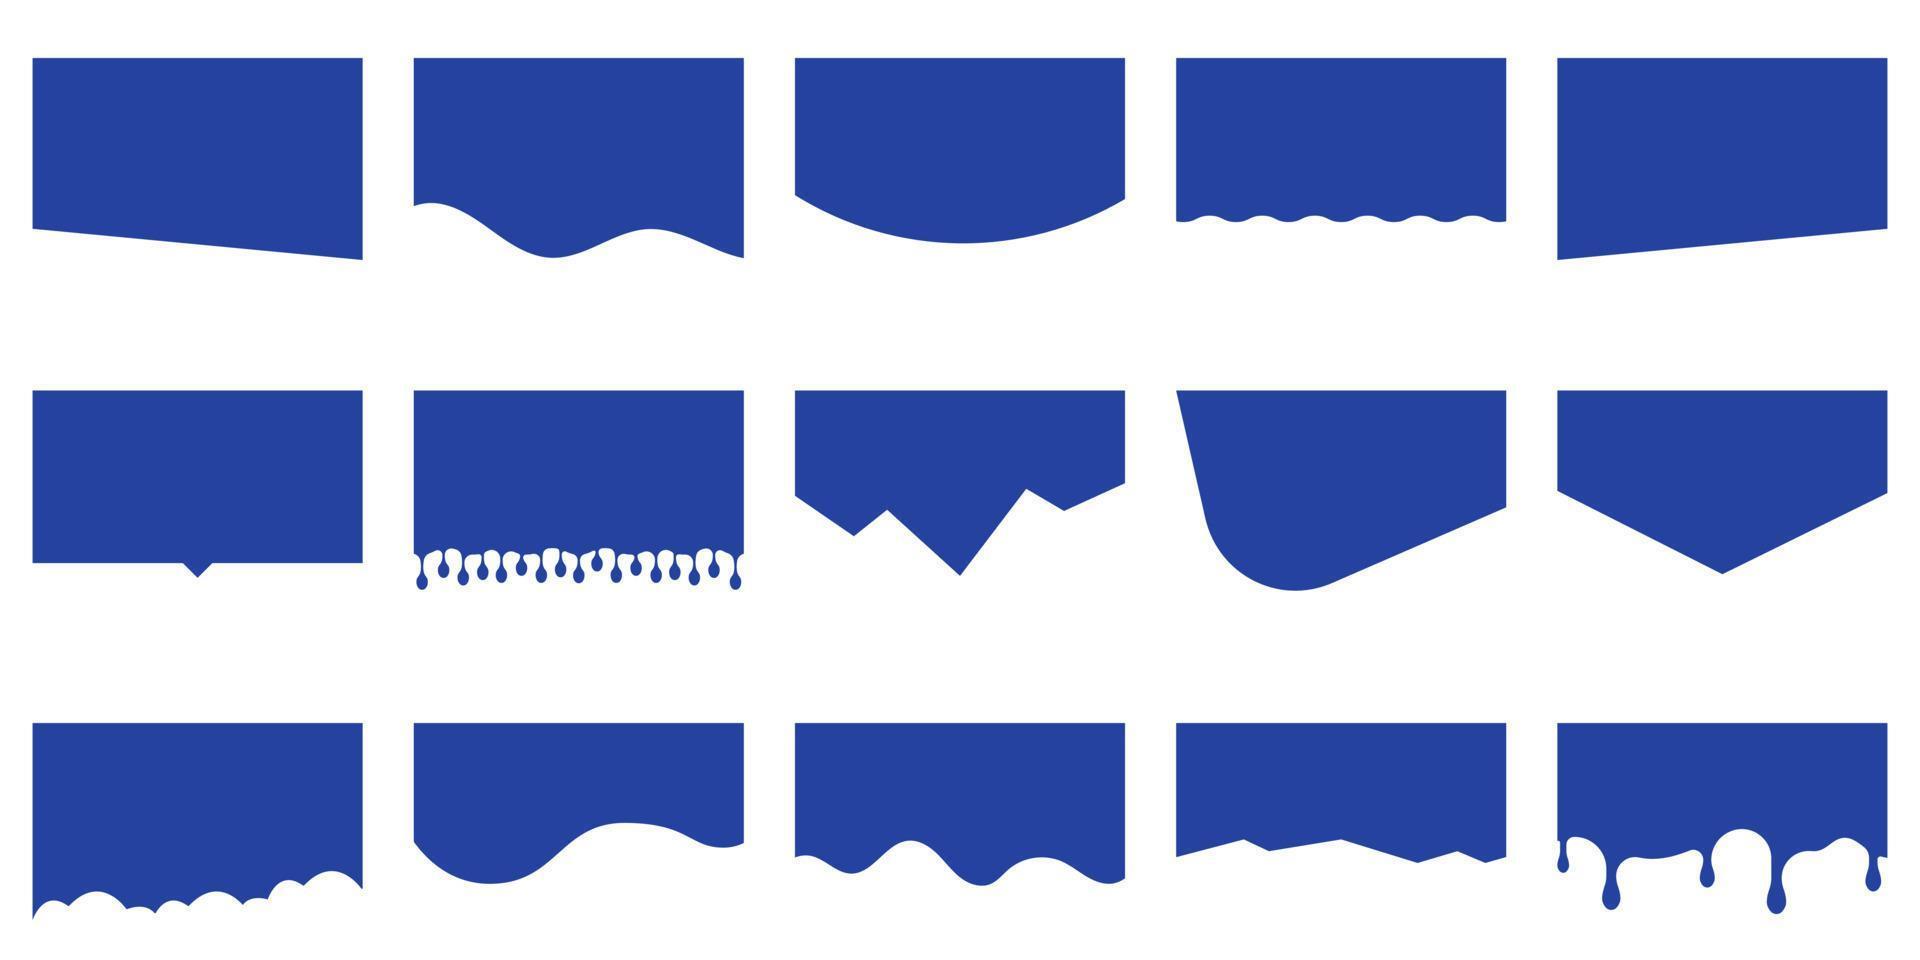 linhas curvas, gotas, coleção de ondas de elemento de design abstrato para site de página superior e inferior. modelo de formas de divisores modernos para conjunto de pictogramas do site. ilustração vetorial isolado. vetor